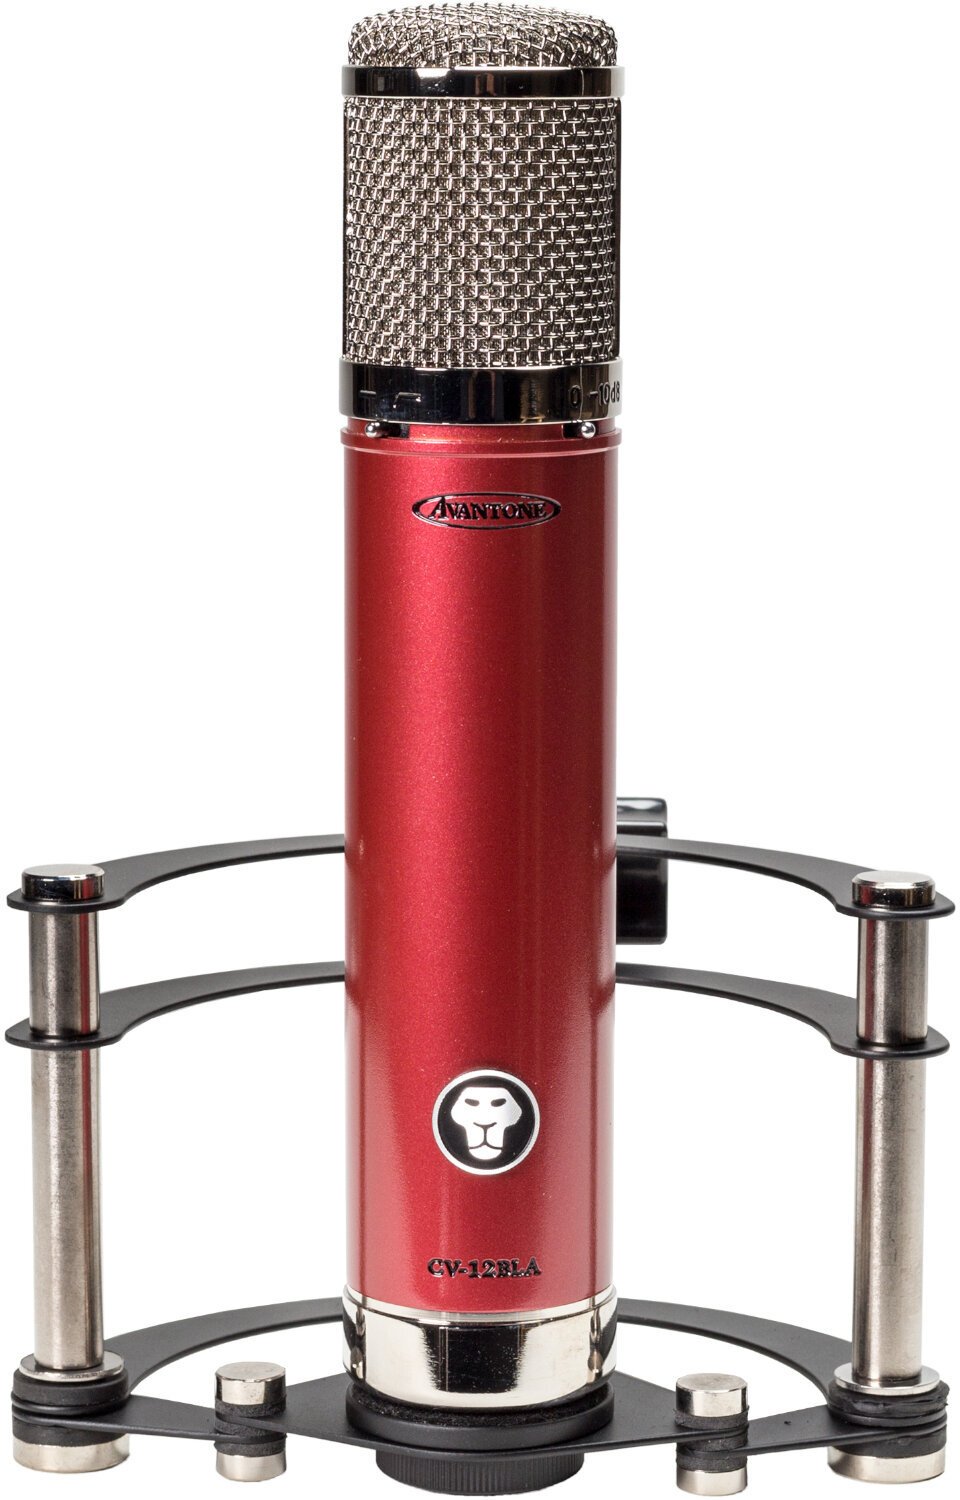 Condensatormicrofoon voor studio Avantone Pro CV-12BLA Condensatormicrofoon voor studio